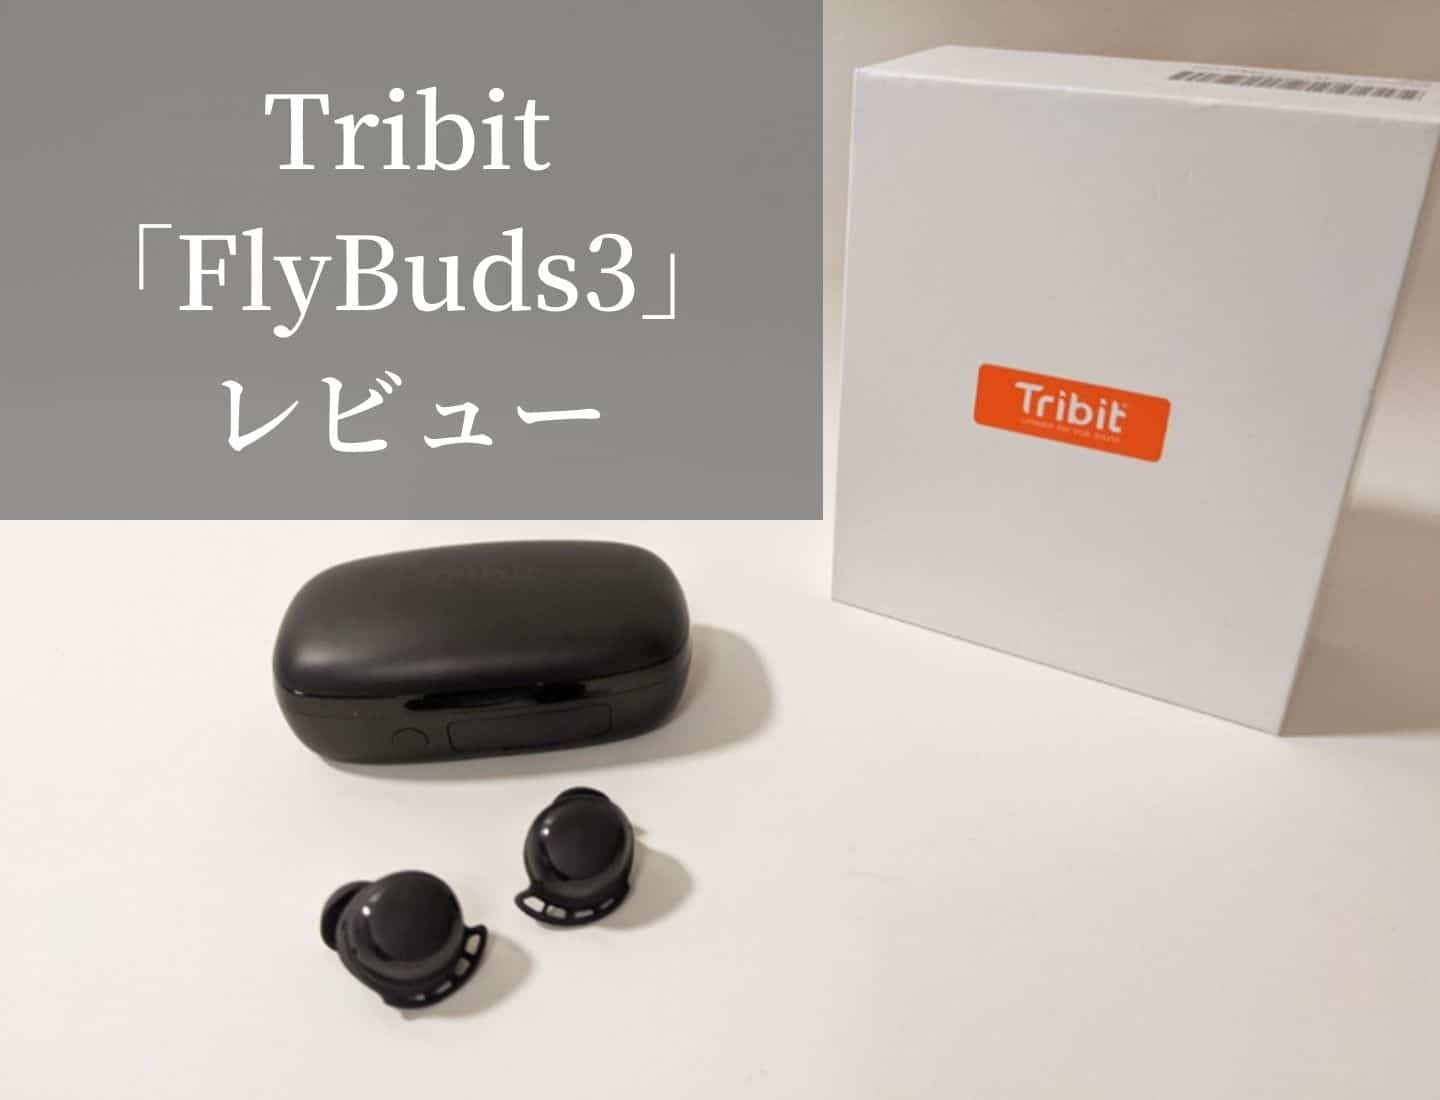 【Tribit FlyBuds3 レビュー】モバイルバッテリーにもなる着け心地の良いIPX7防水設計なスポーツ向け完全ワイヤレスイヤホン